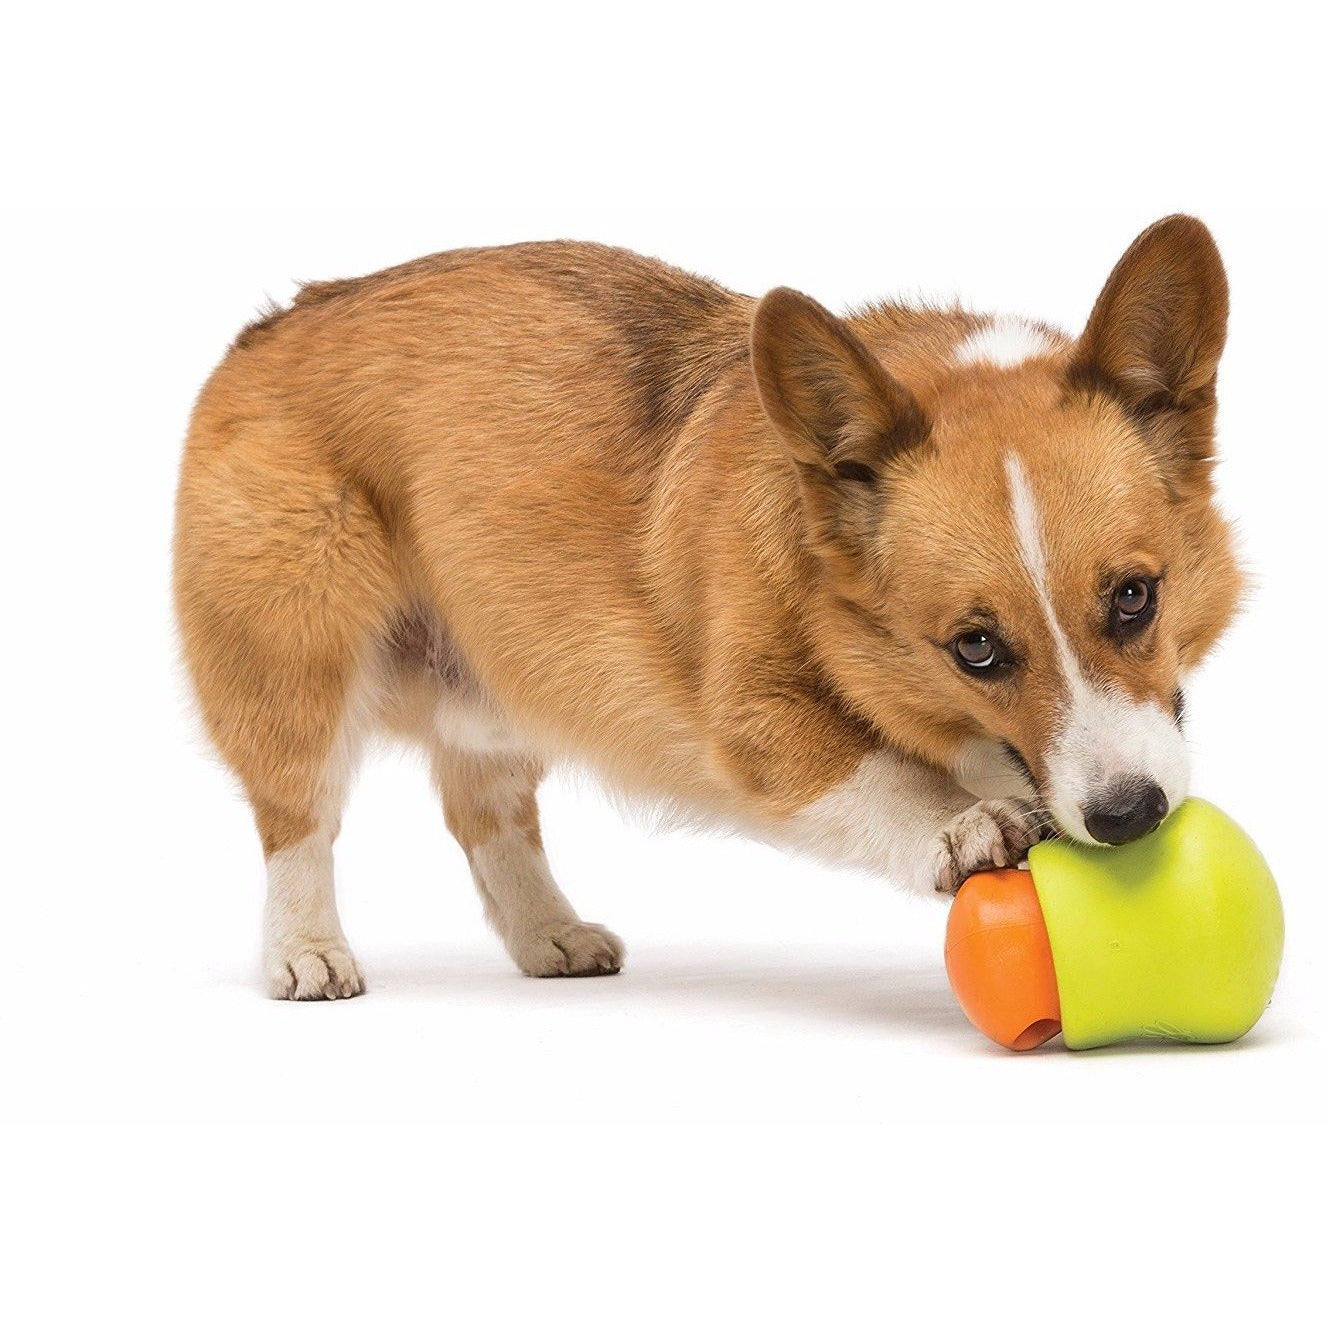 West Paw Toppl Zogoflex Dog Toy – Green Tails Market